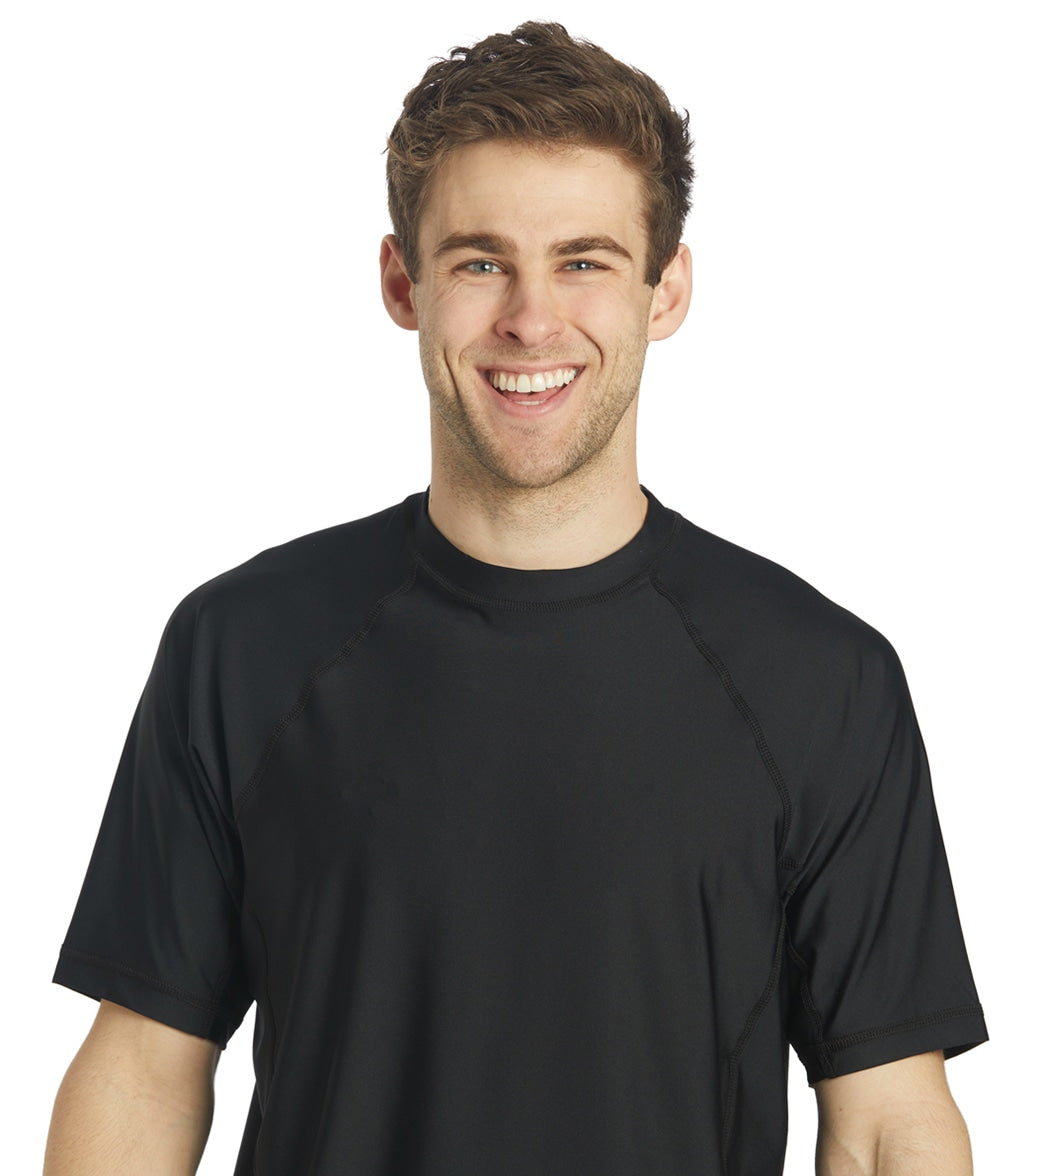 Sporti Men's Short Sleeve Shirt Upf 50+ Comfort Fit Rashguard - Black Large - Swimoutlet.com